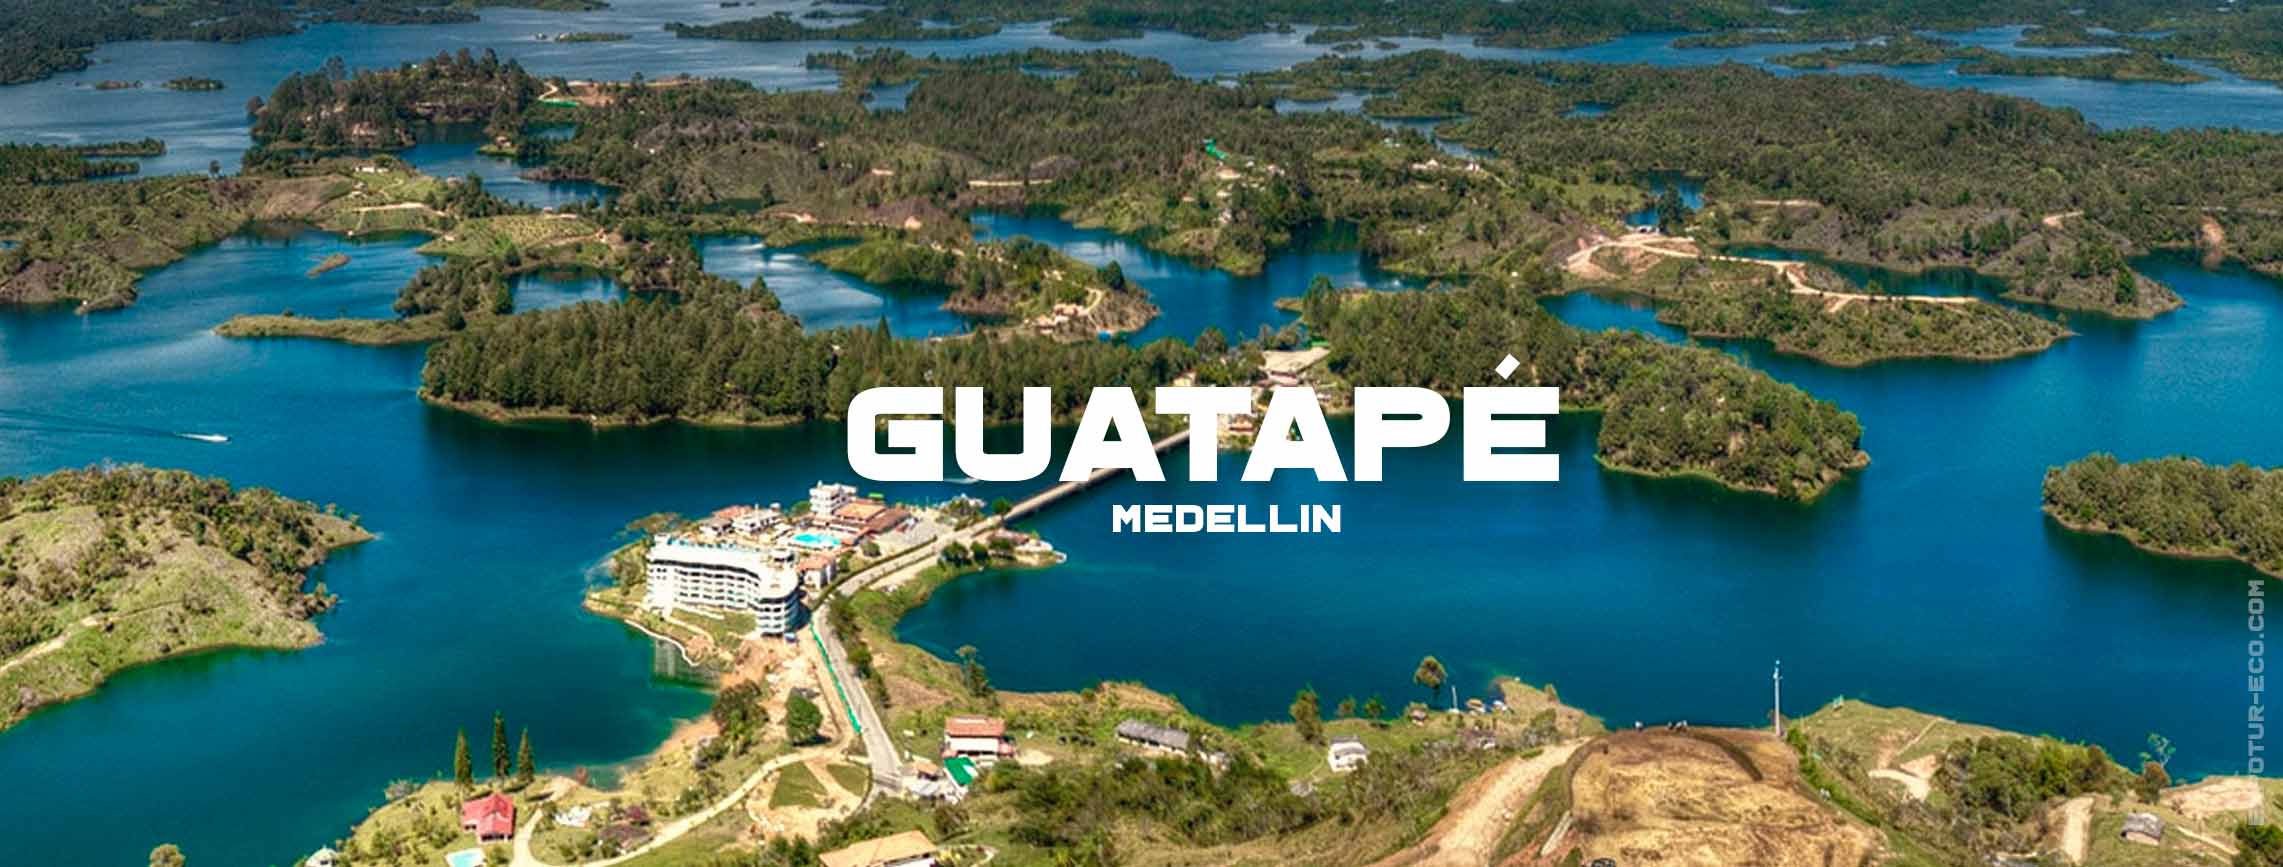 medellin-guatape-blog-semana-santa-expotur-lugar-turistico-colombia Easter in Colombia